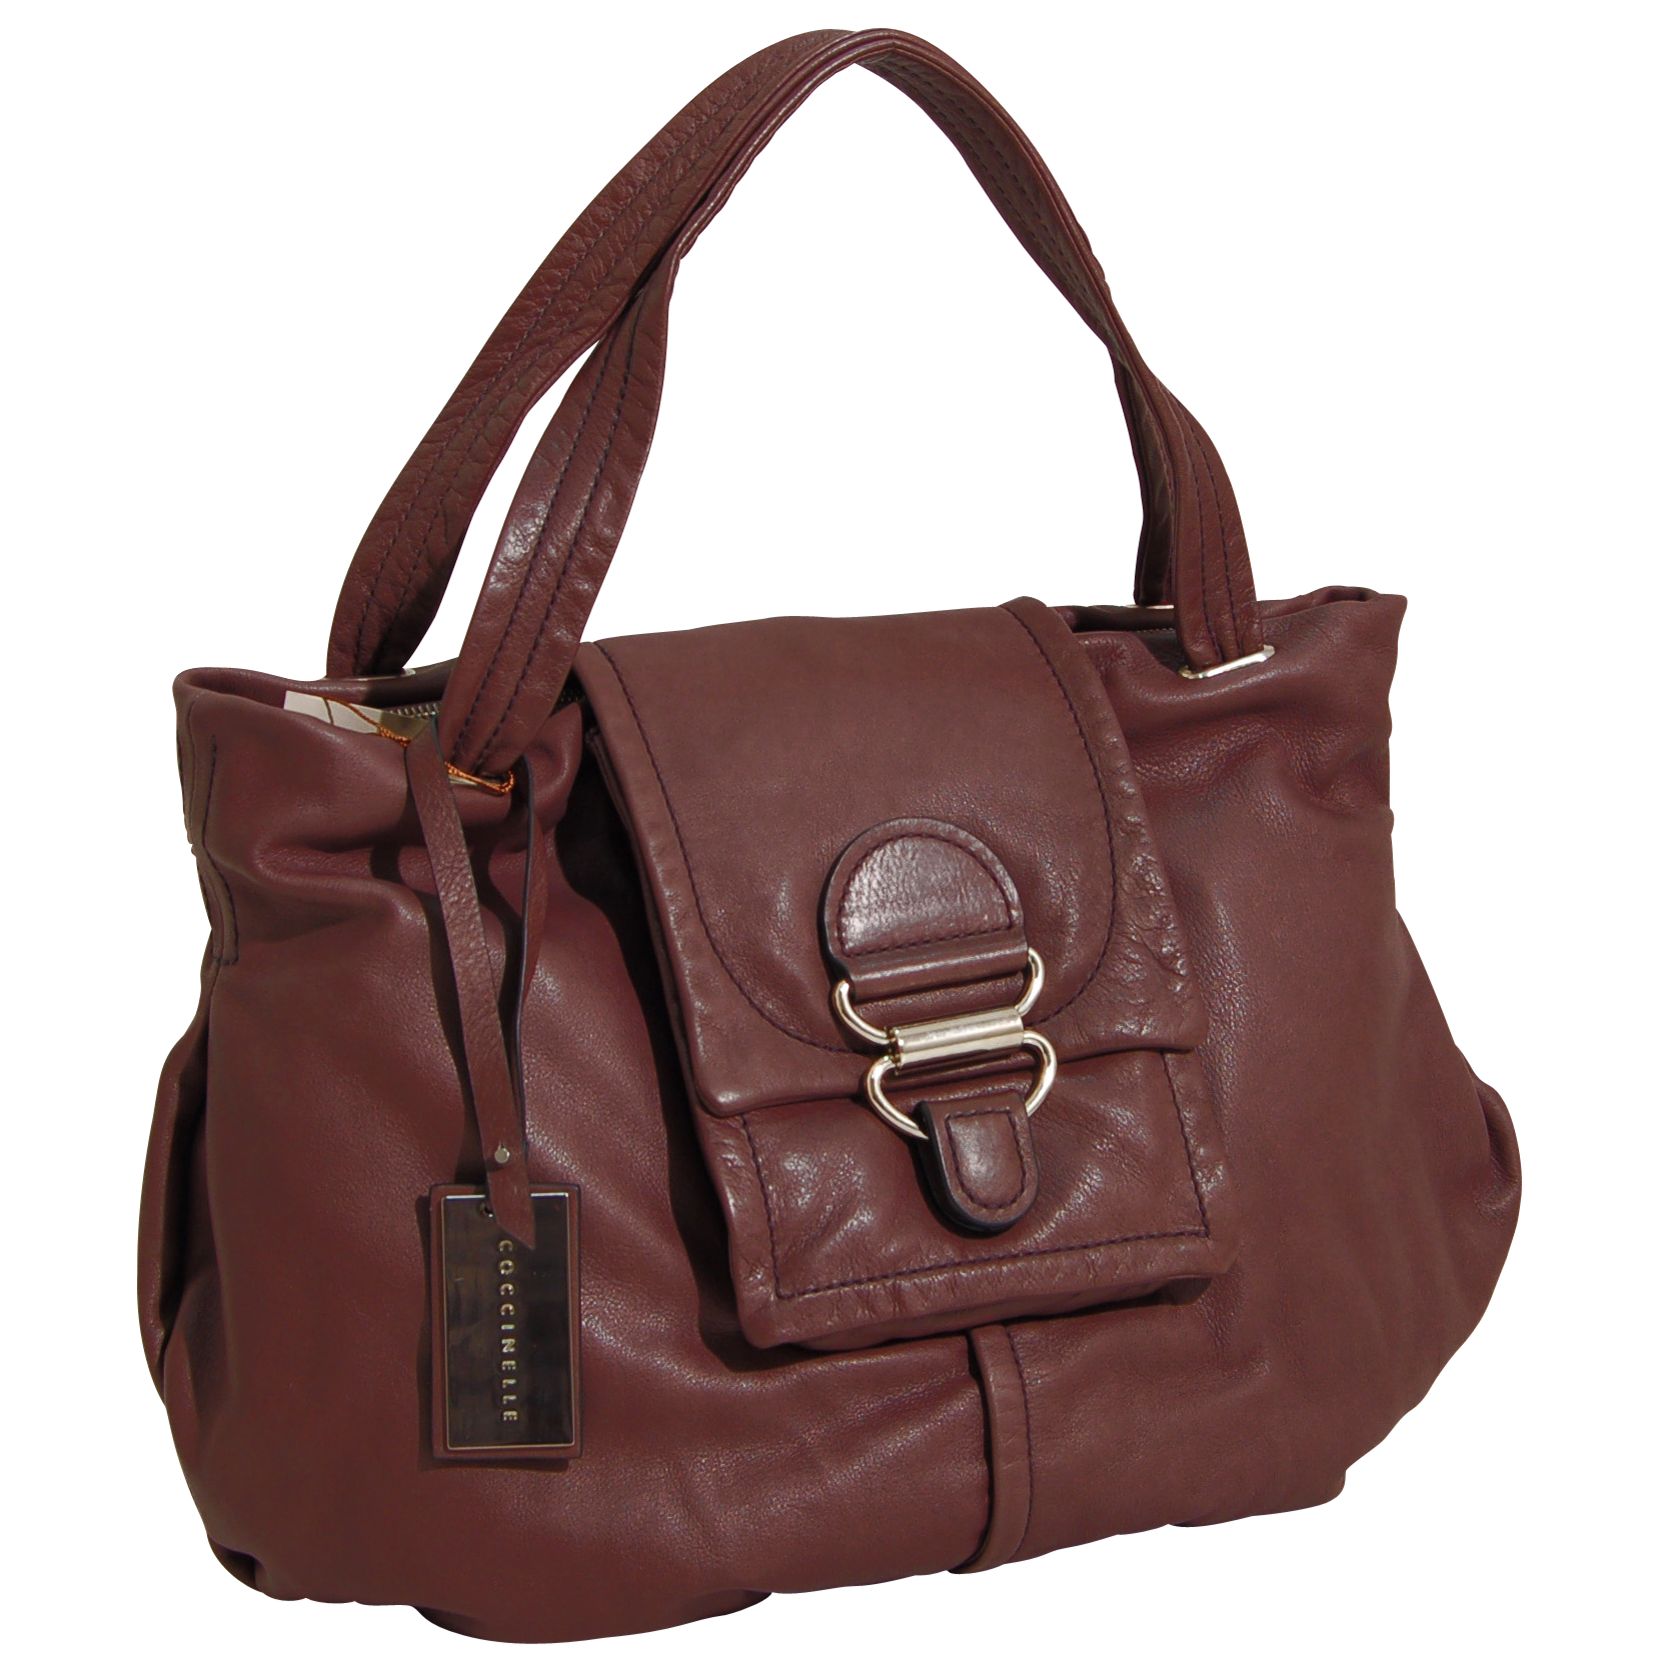 Coccinelle Joan Large Leather Shoulder Bag, Brown at JohnLewis